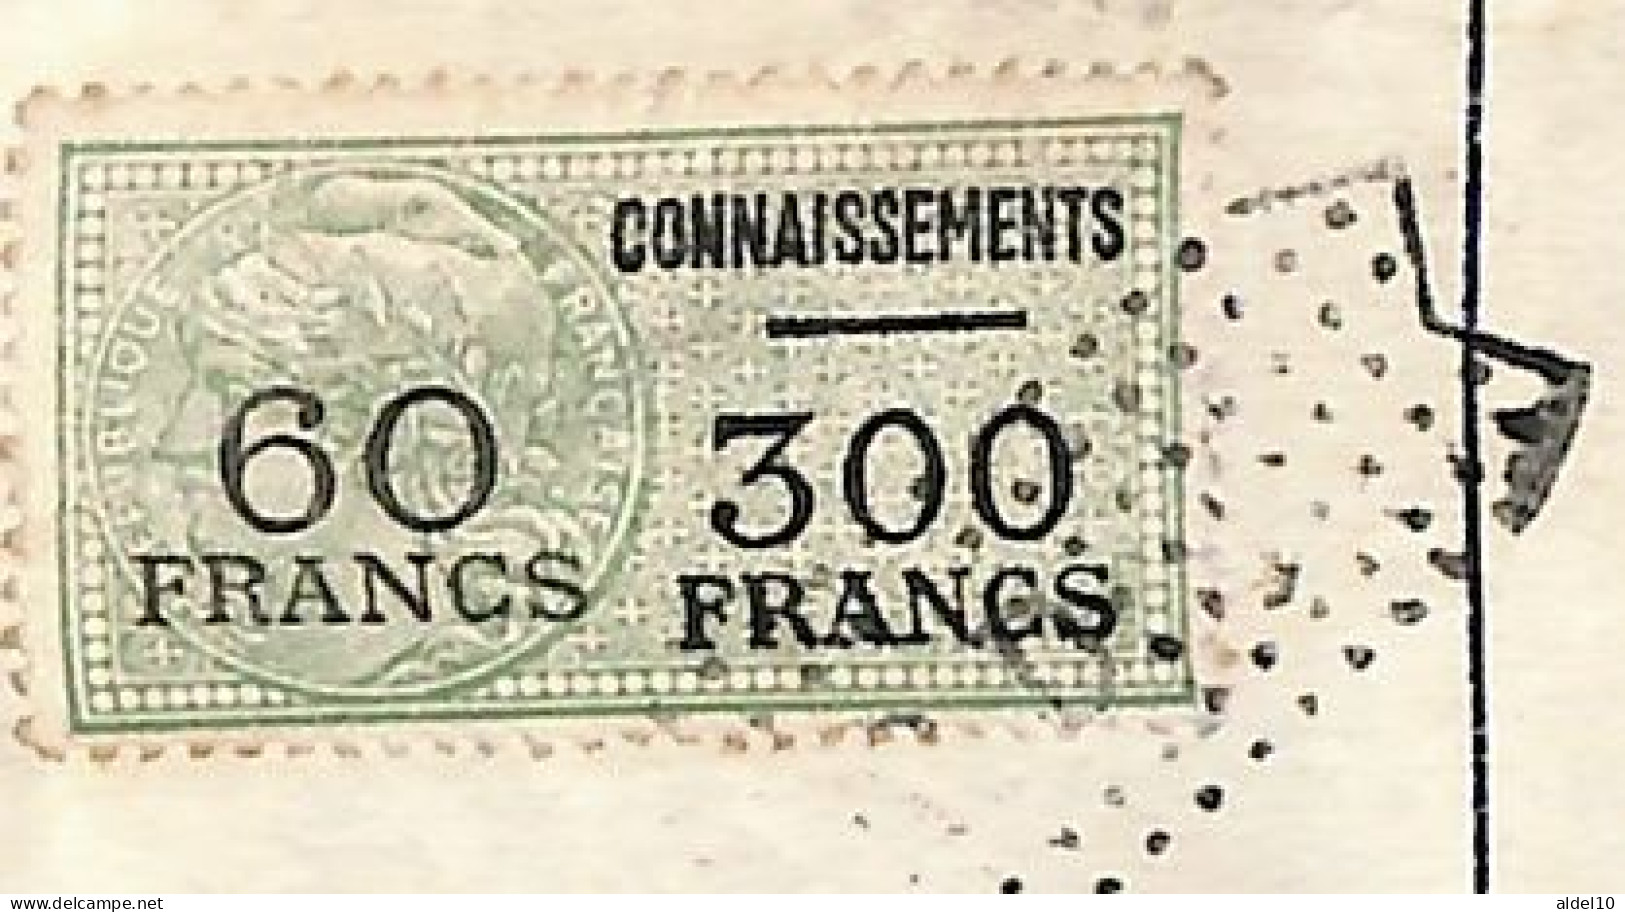 Connaissement Pour Bordeaux 1954 Avec Timbres Valeur Surch 60 Franc Sur 300 Vert - Brieven En Documenten